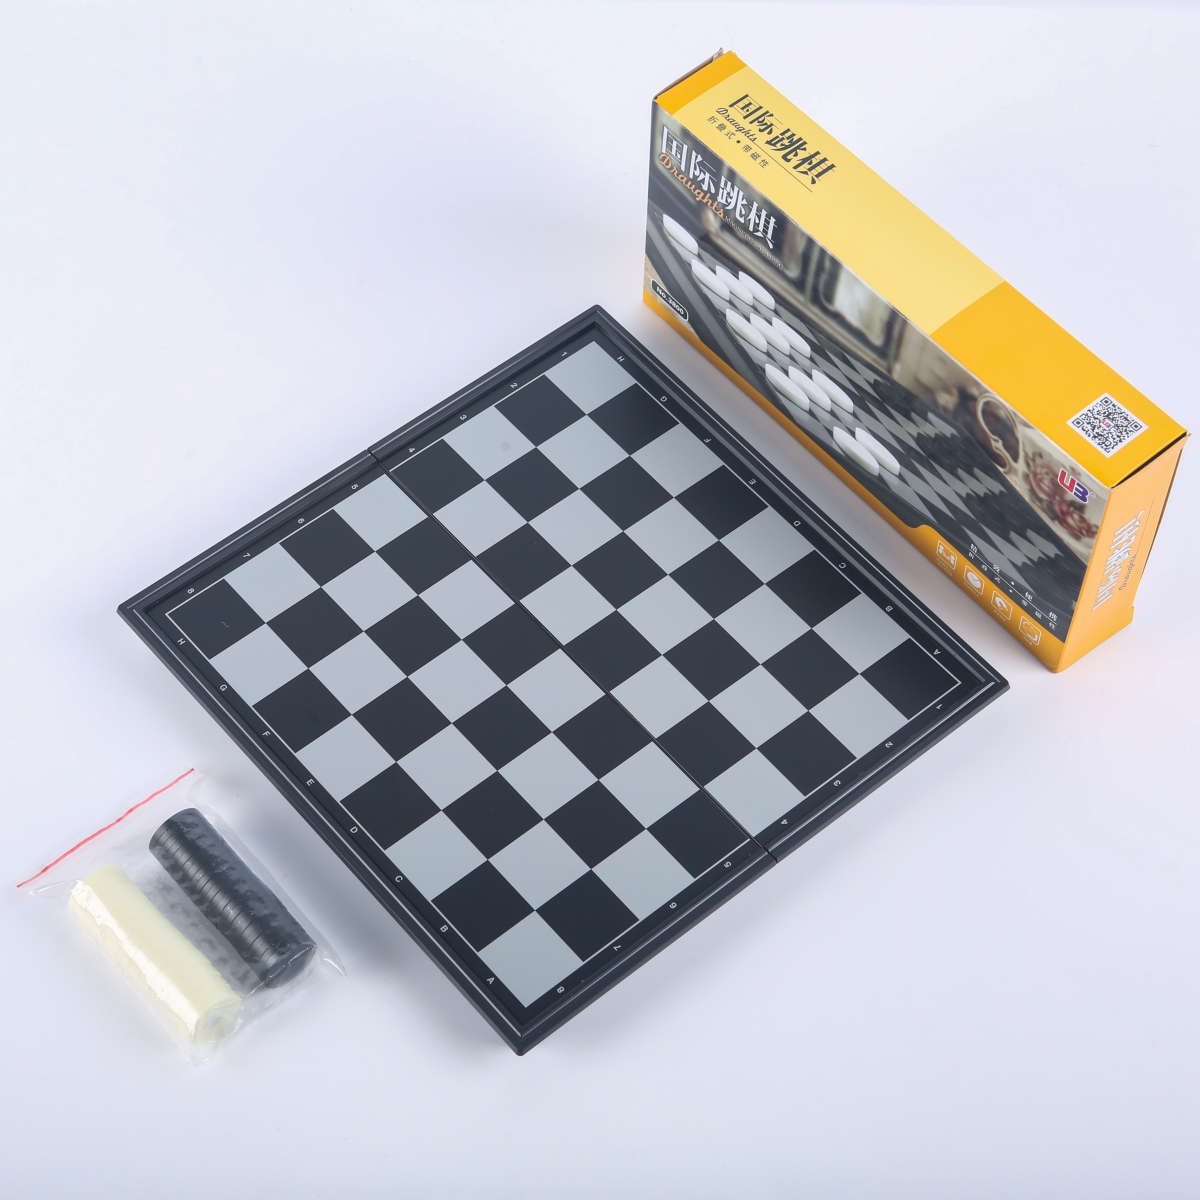 友邦国际跳棋磁性64格折叠棋盘套装小学生儿童西洋跳棋UB比赛专用